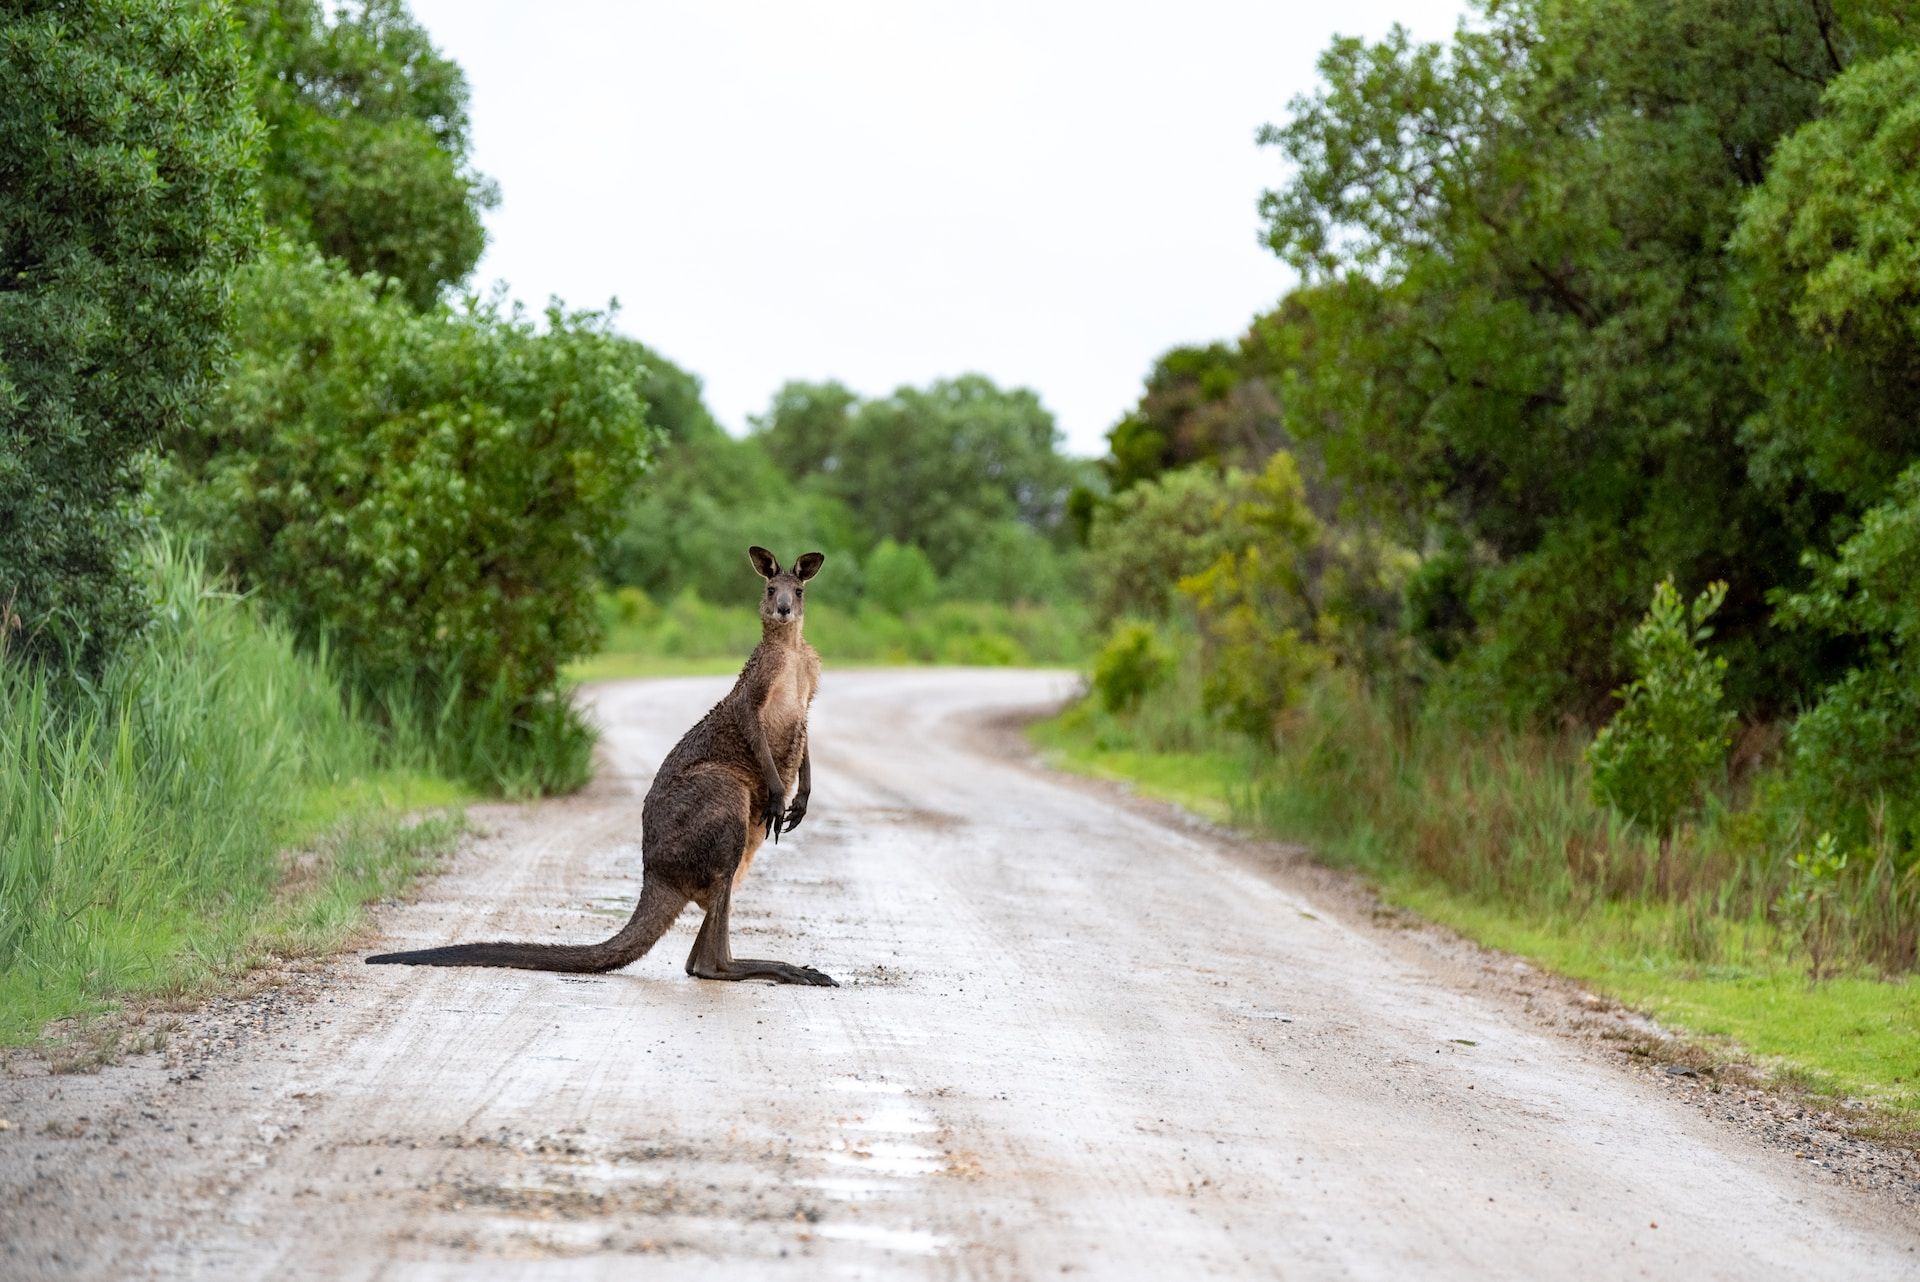 Kangaroo Australian animals 